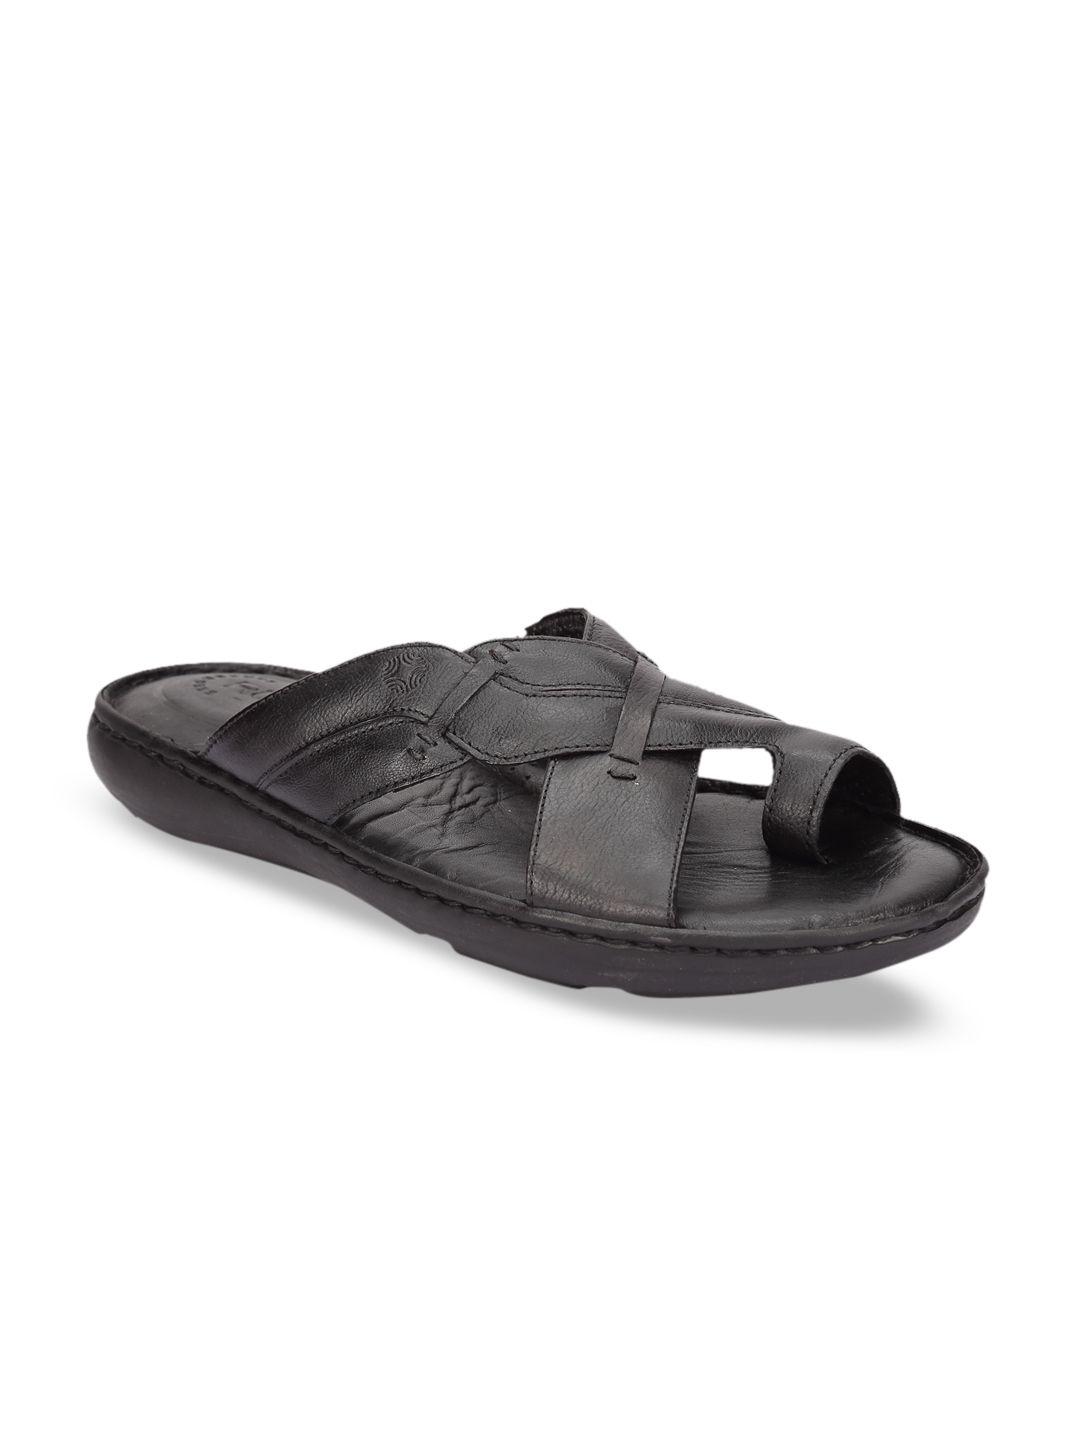 ruosh-men-black-sandals